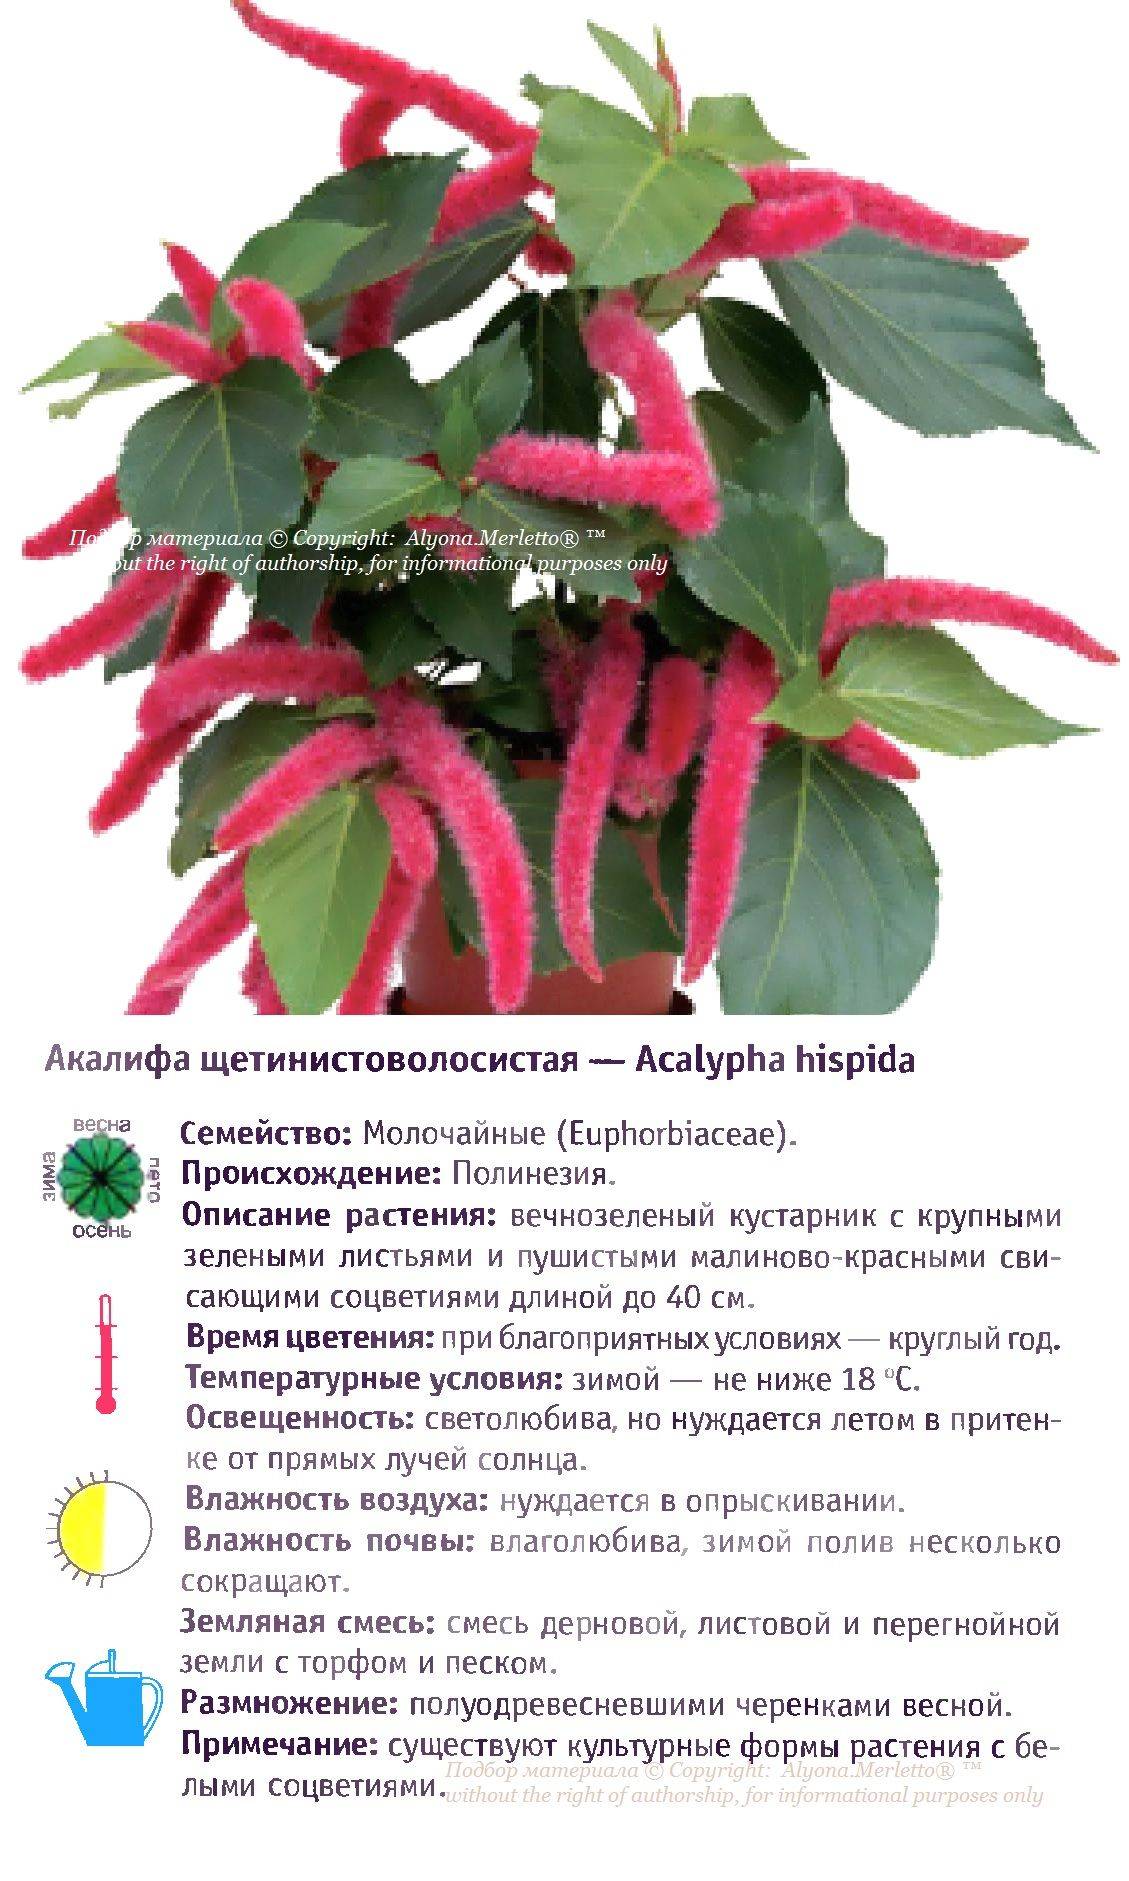 Растение лисий хвост — акалифа щетинистоволосистая